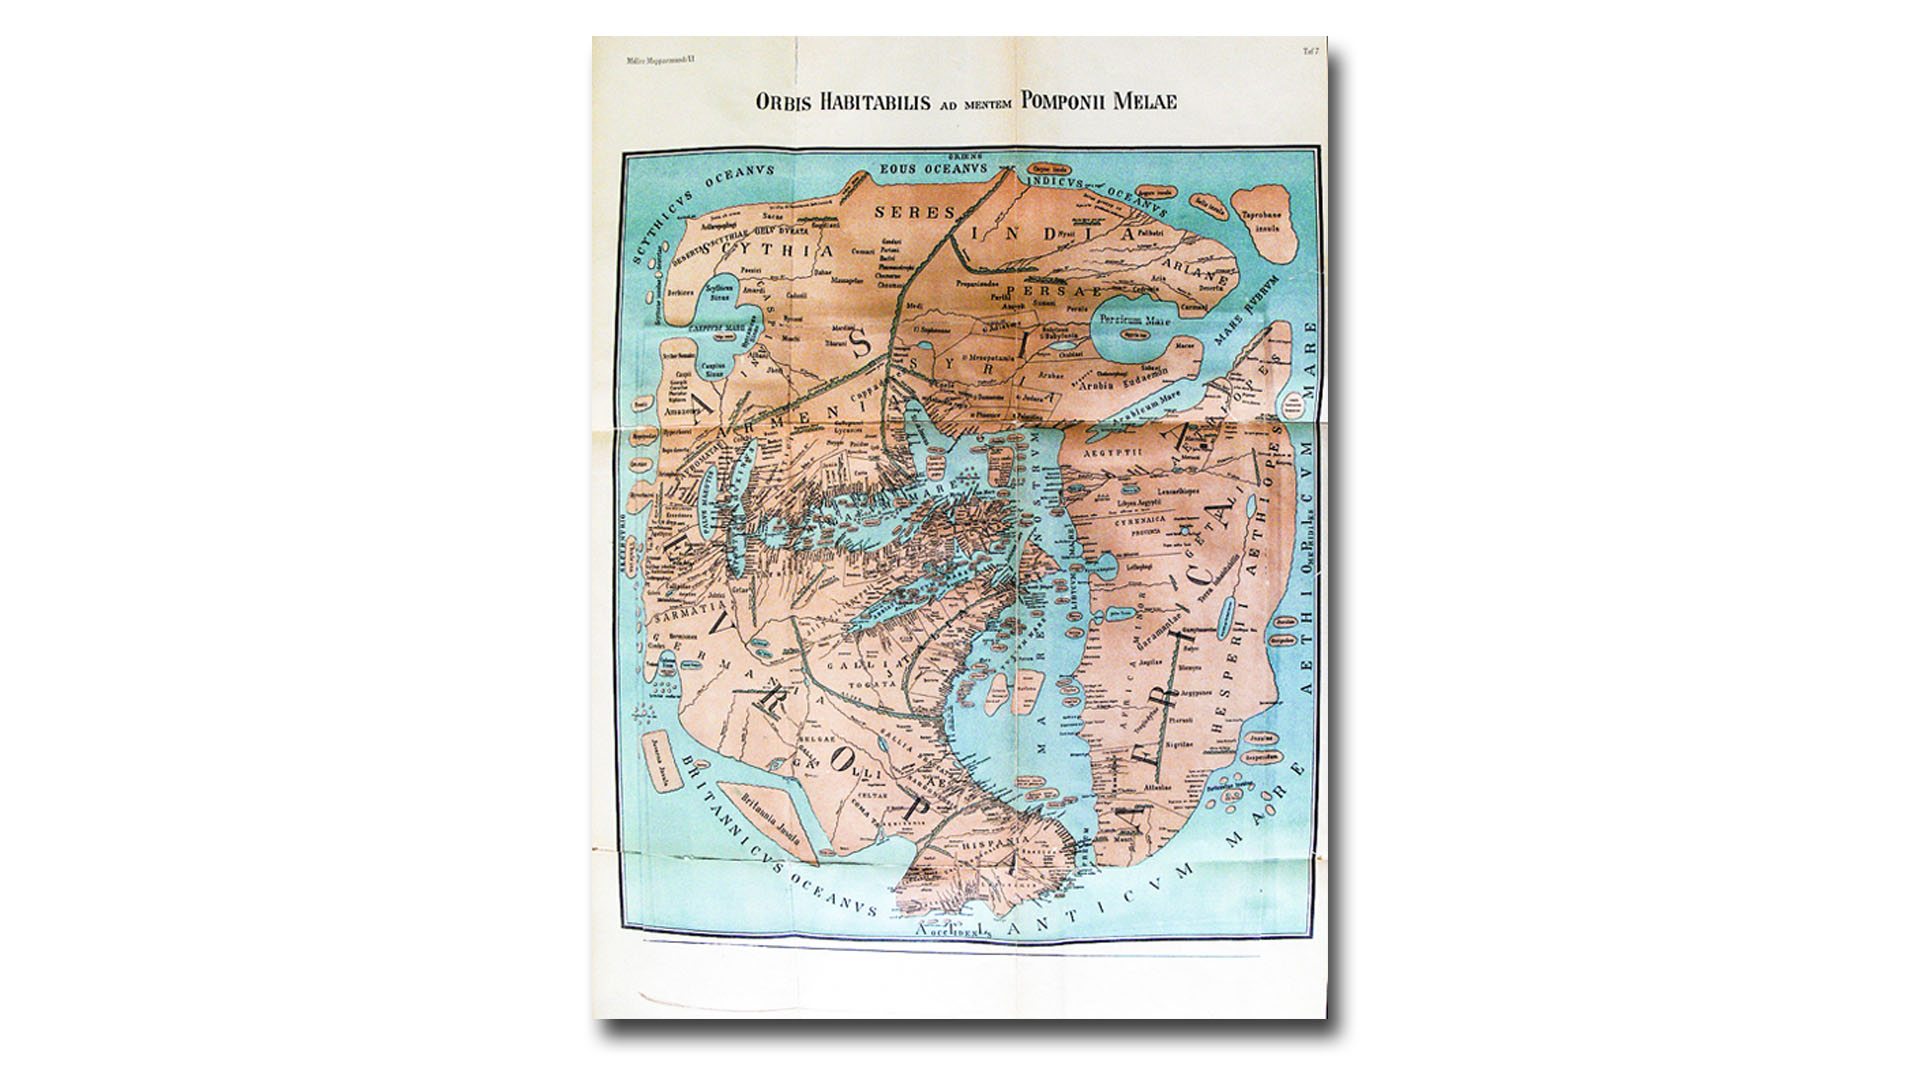 Von K. Miller 1898 rekonstruierte Weltkarte des Pompunius Mela, die der Geograph und Kosmograph Mela 43-44 n. Chr. anfertigte. Eine Inselgruppe kann als die Kanaren gedeutet werden.